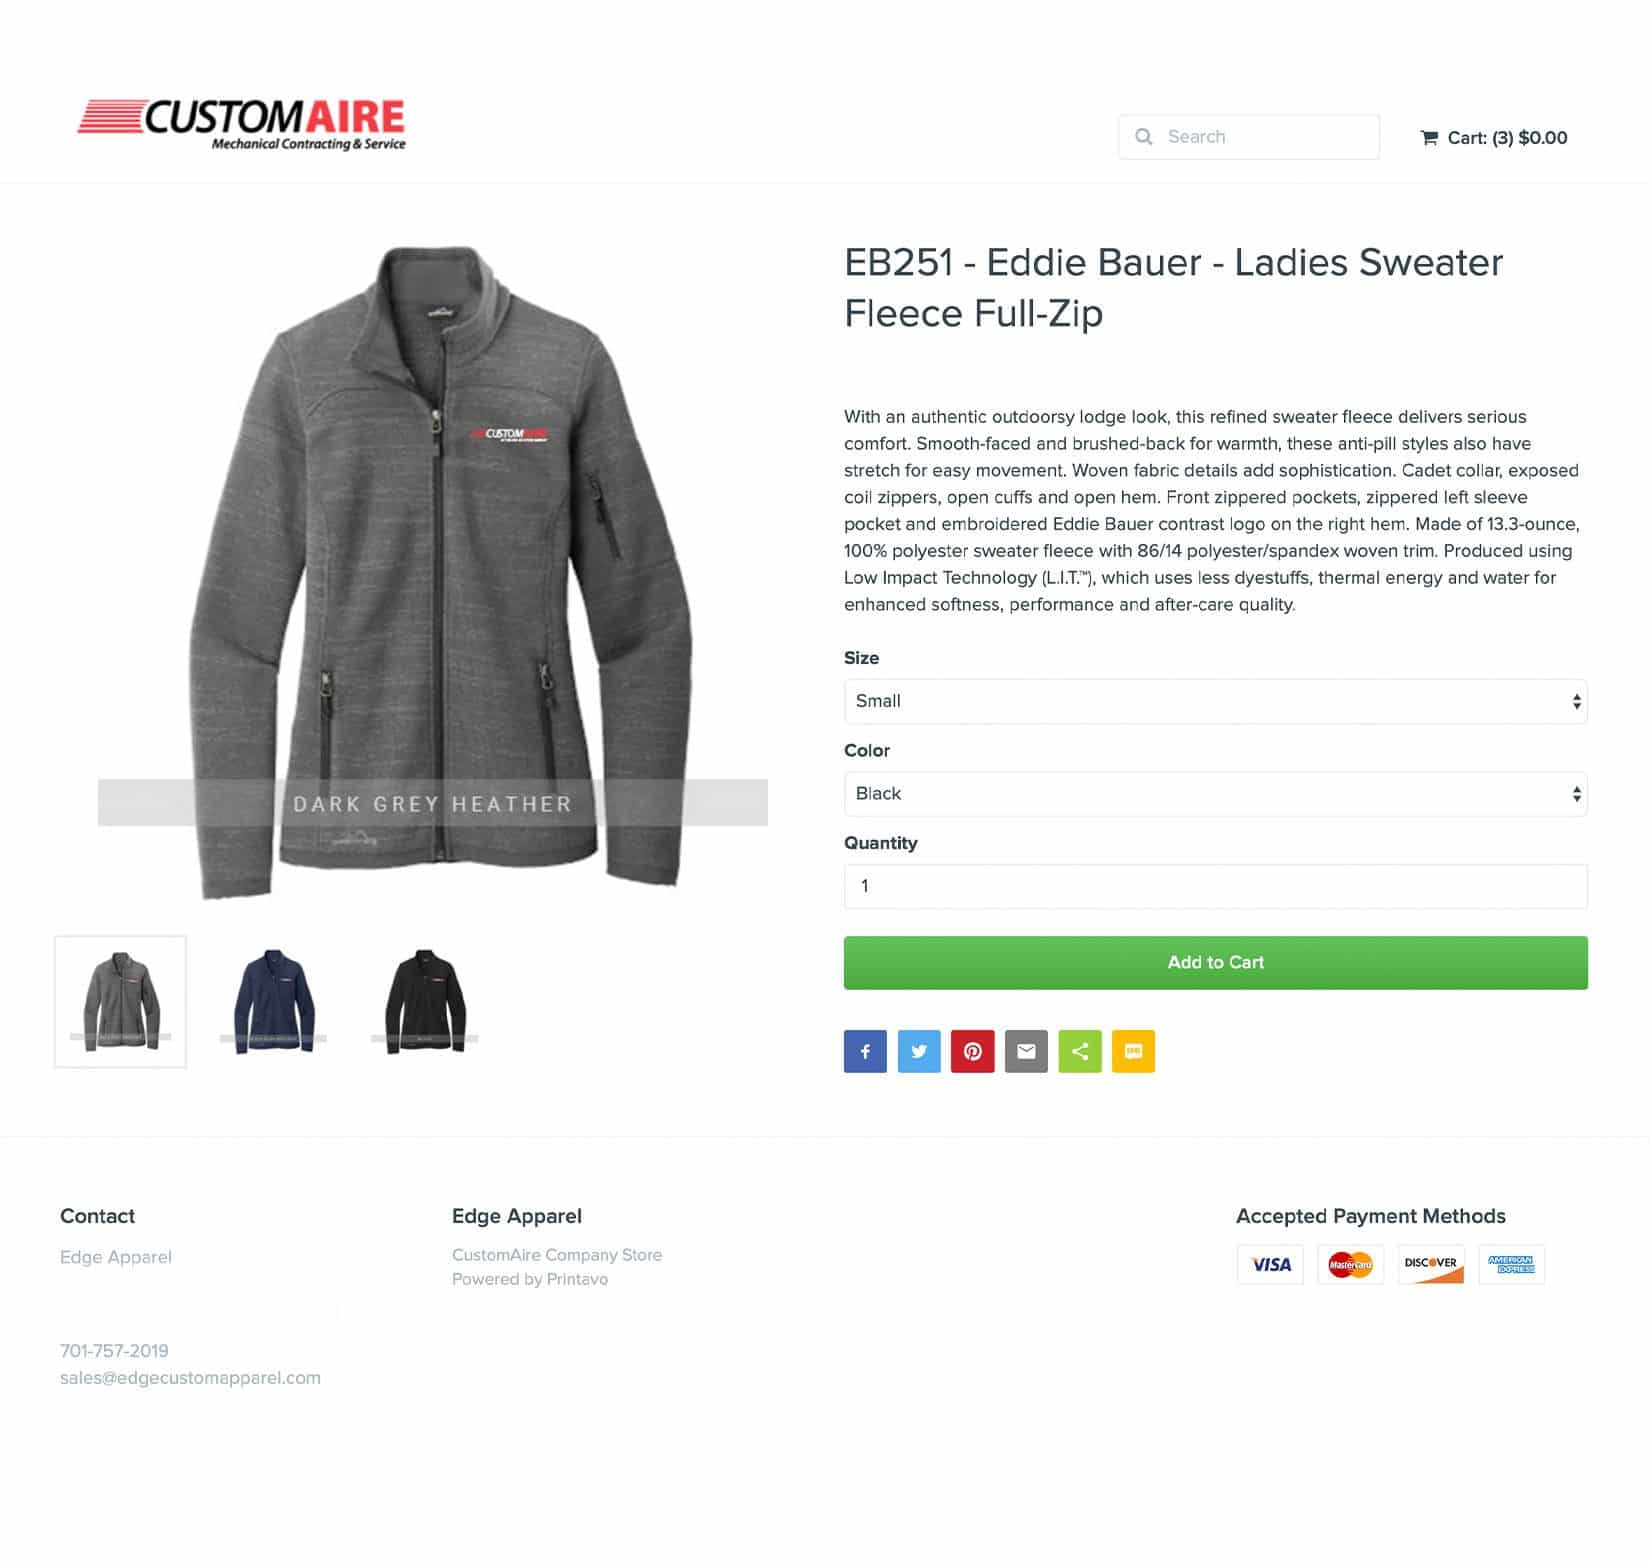 A screenshot of an online apparel store